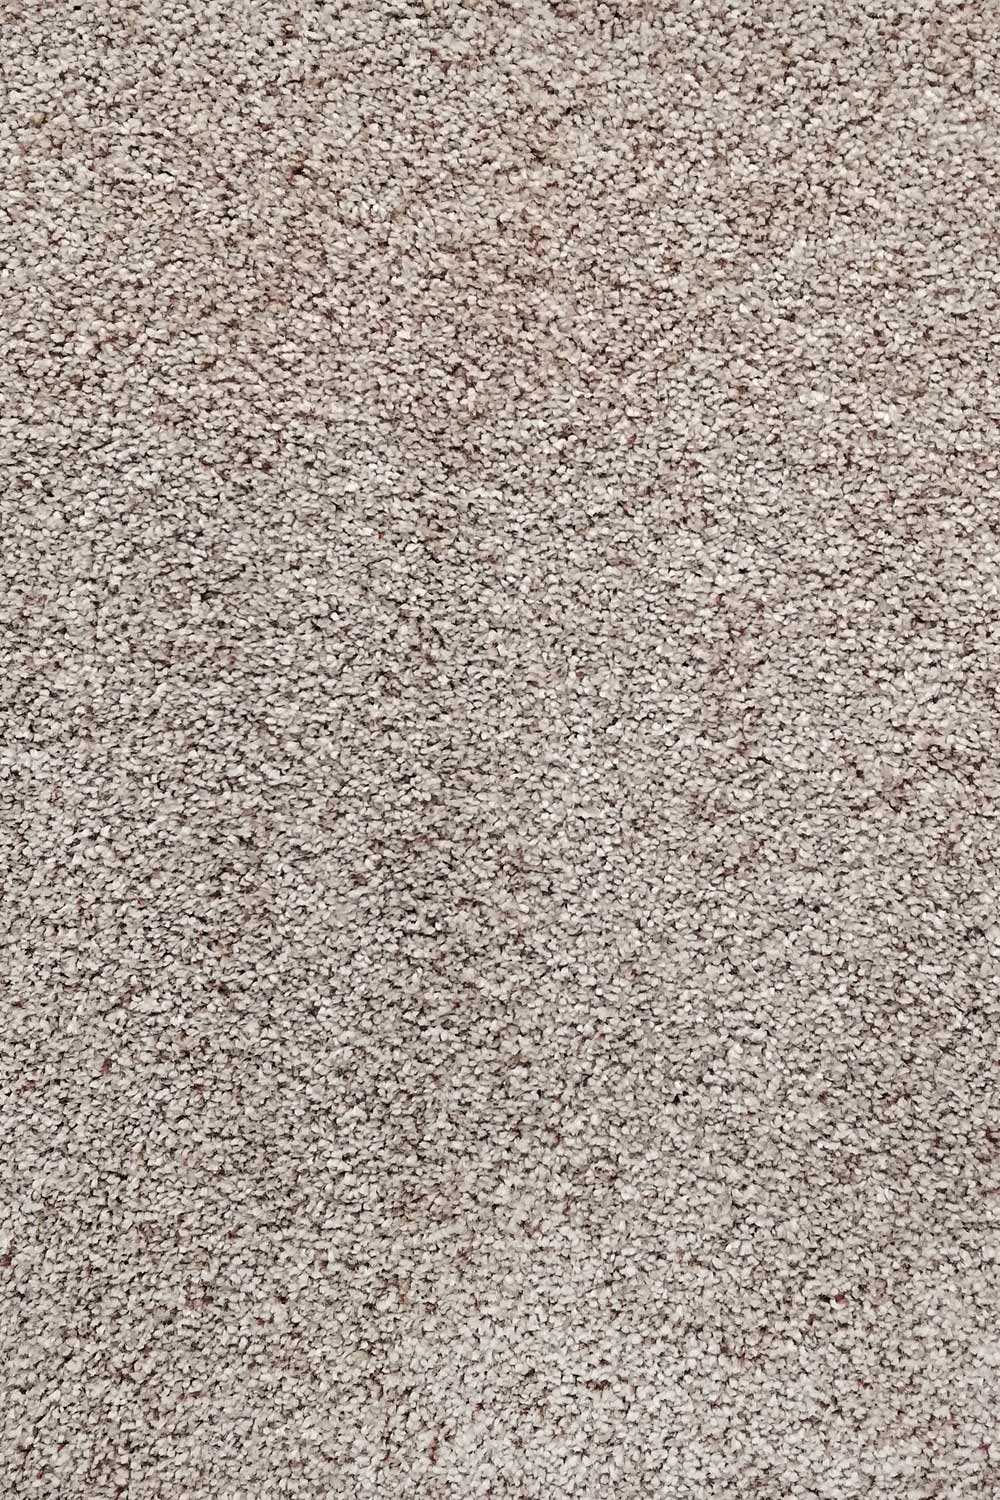 Metrážny koberec Dalesman 69 400 cm